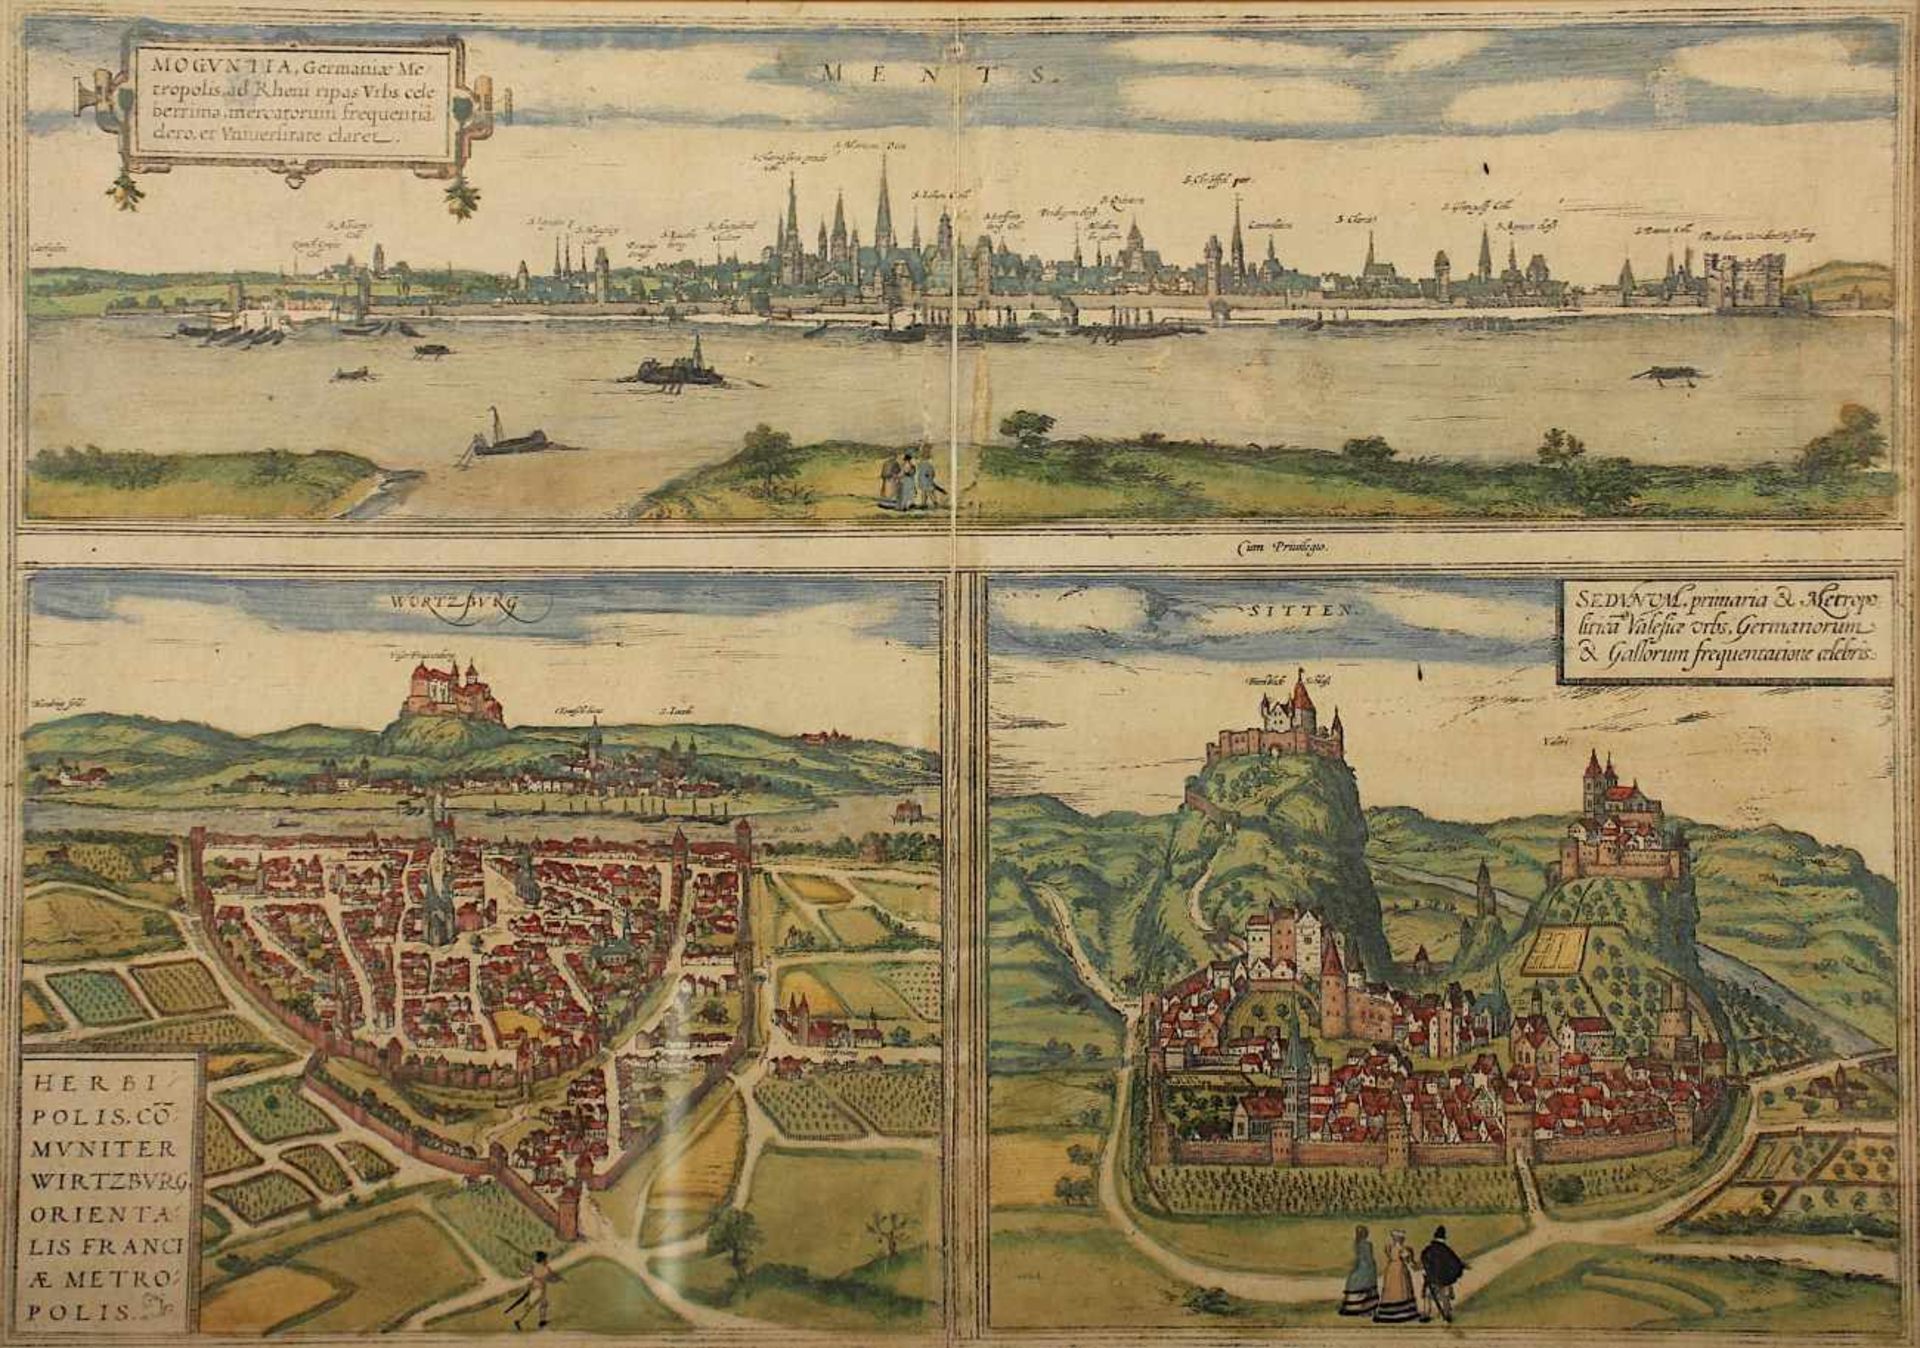 3 ANSICHTEN, "Moguntia, Wirtzburg, Sedunum", 3 Stiche auf einem Blatt, Panorama von Mainz, - Image 2 of 2